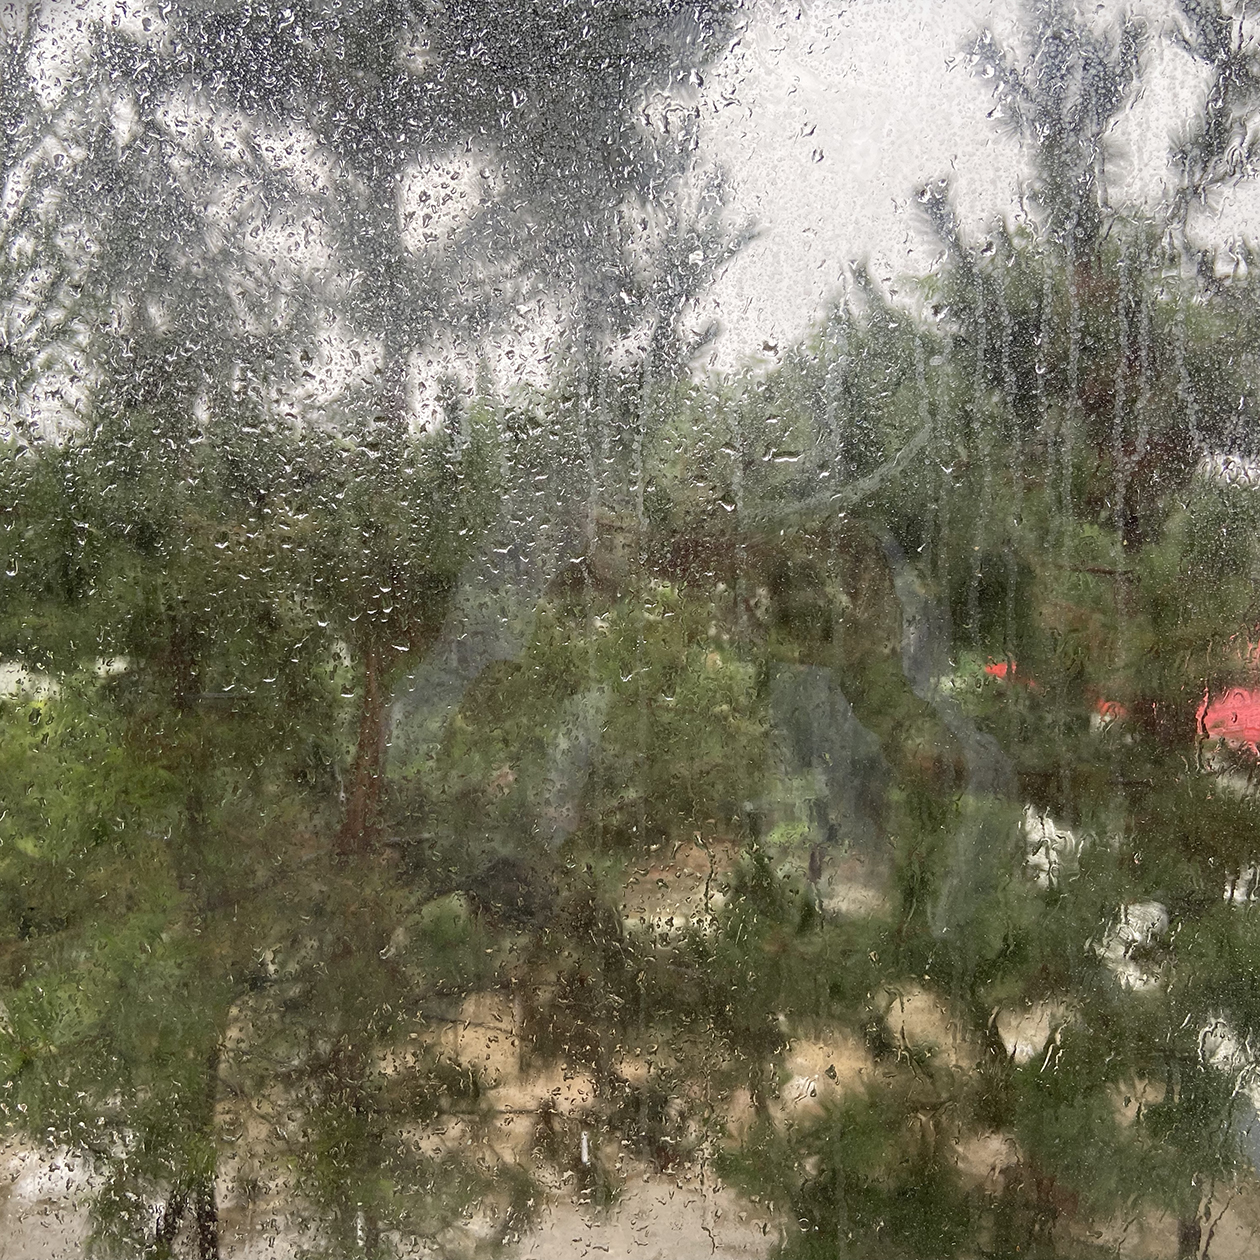 Тайфун добрался до Яньтая. Около двух дней постоянно лил сильный дождь. А утром в день вылета я заметила, что вода попала в комнату и залила весь столик